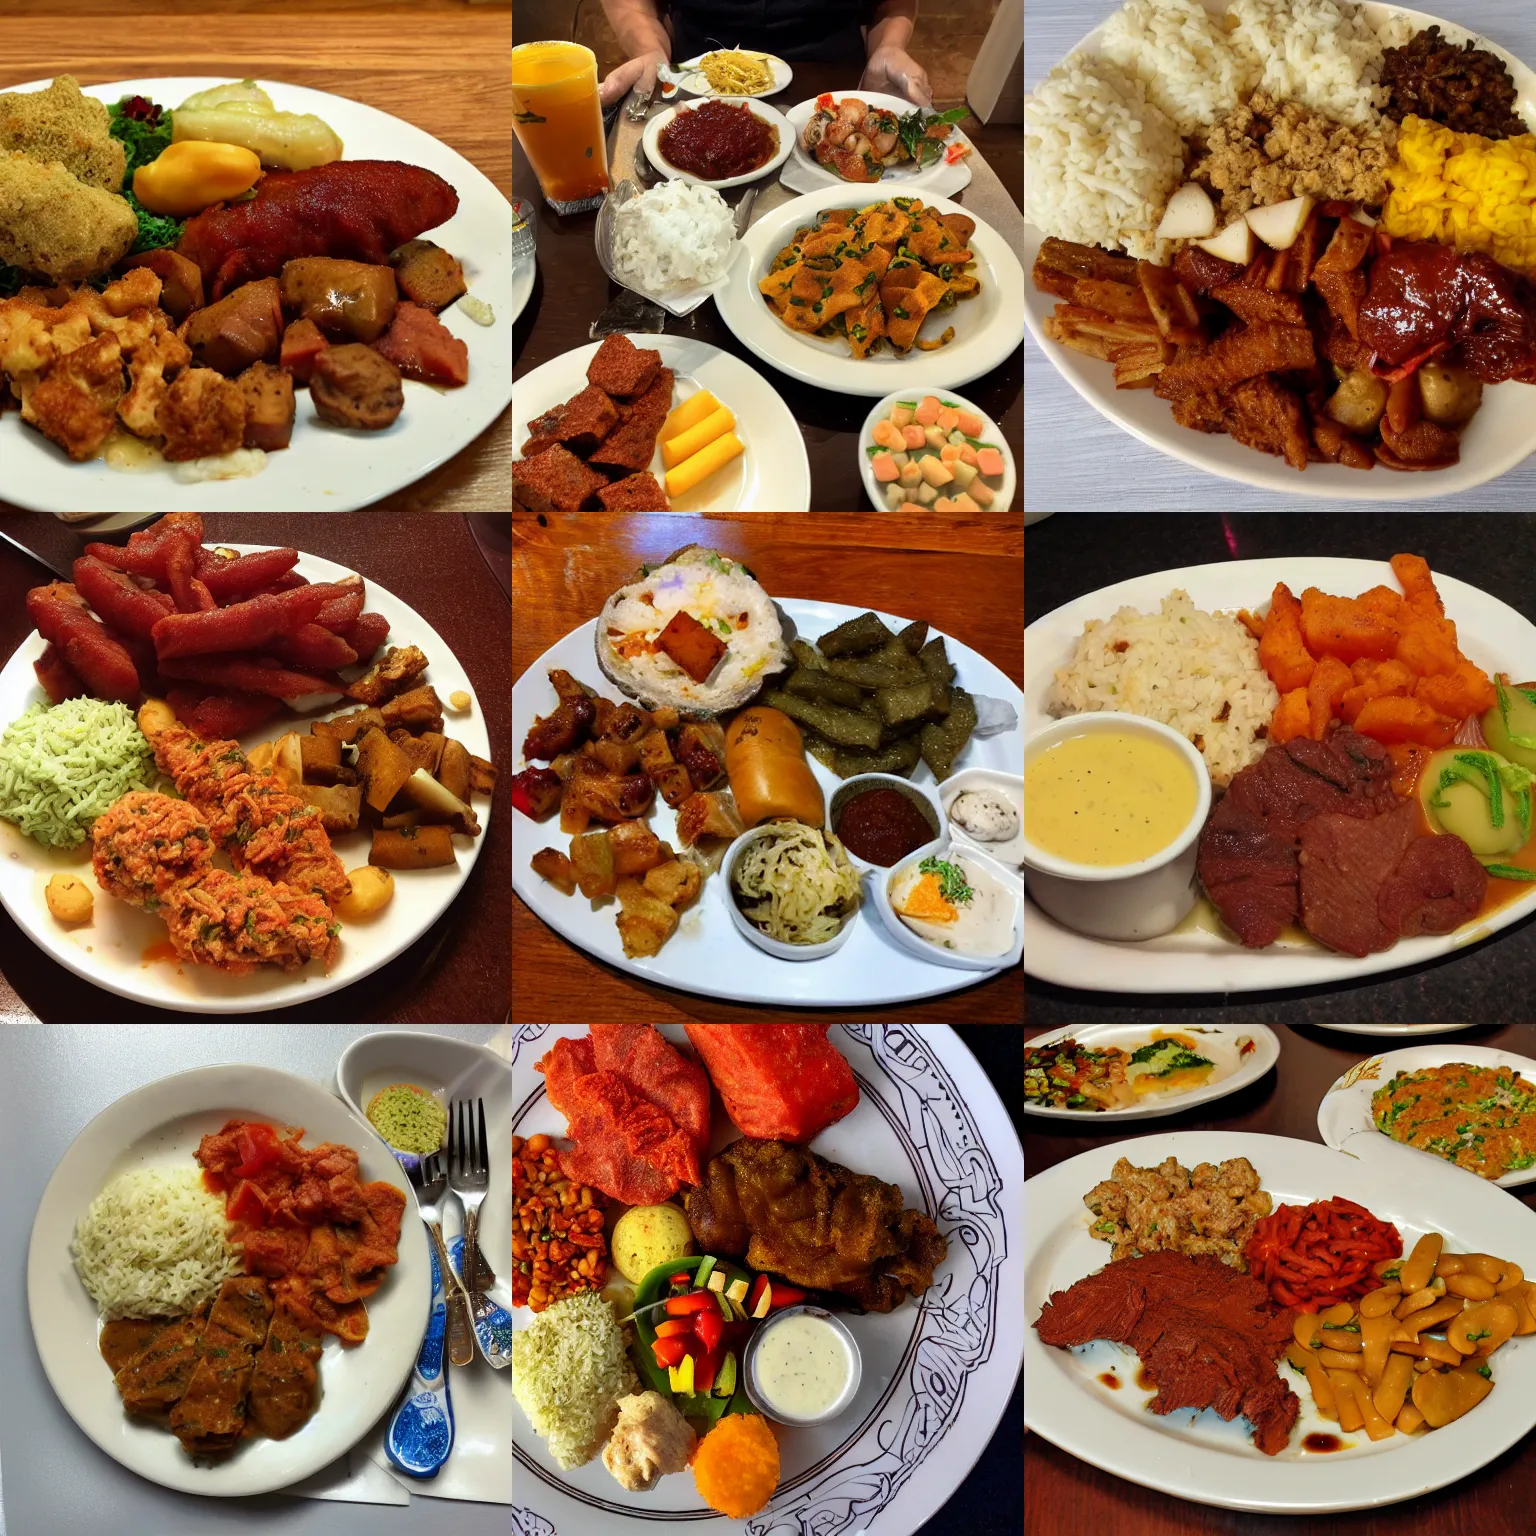 Prompt: a plate of food from buffalo ny, buffalo ny cuisine